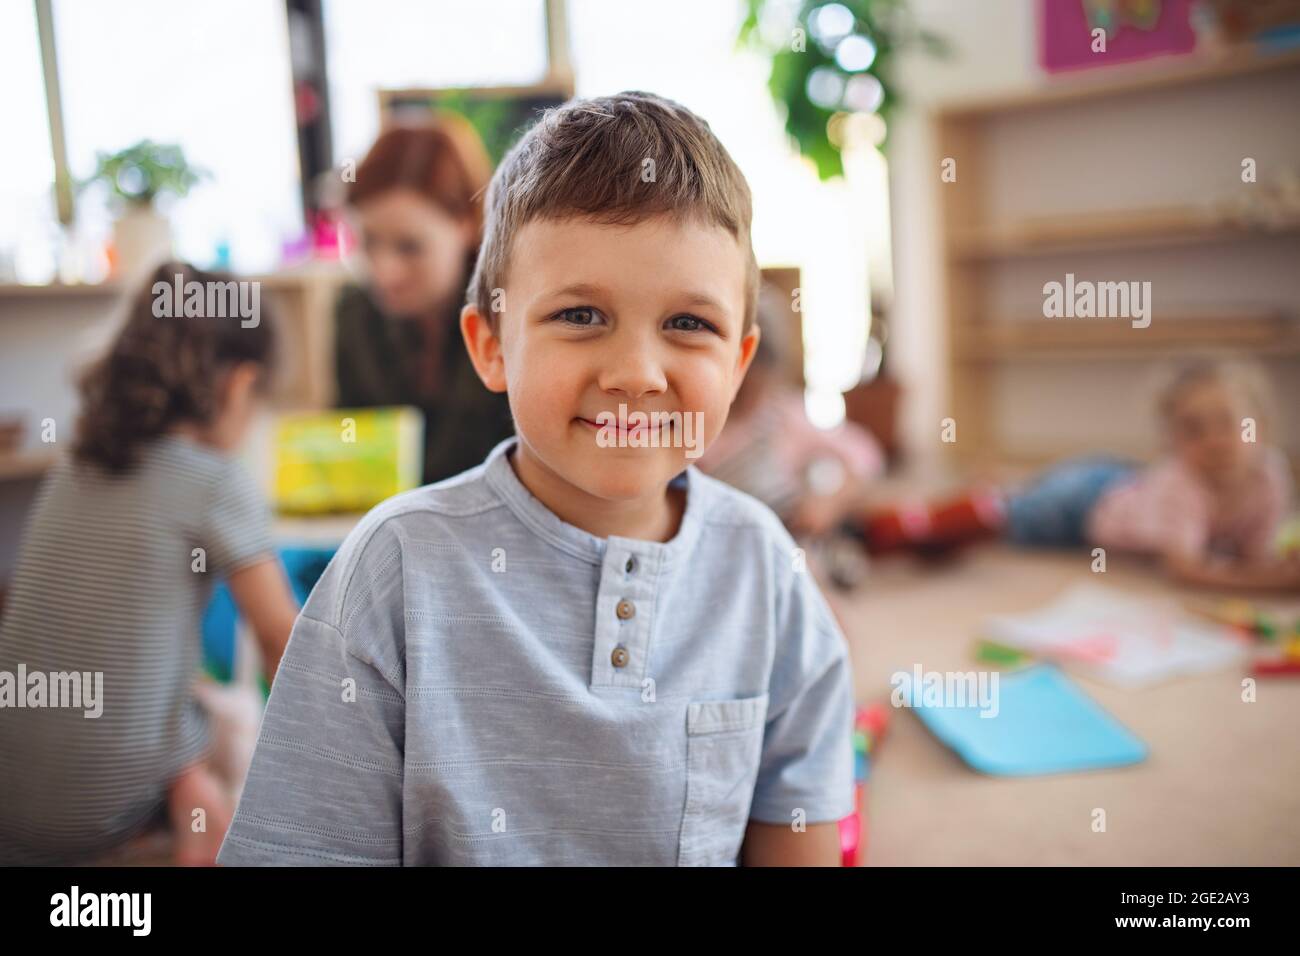 Porträt eines kleinen Jungen im Kindergarten im Klassenzimmer, der die Kamera anschaut. Stockfoto